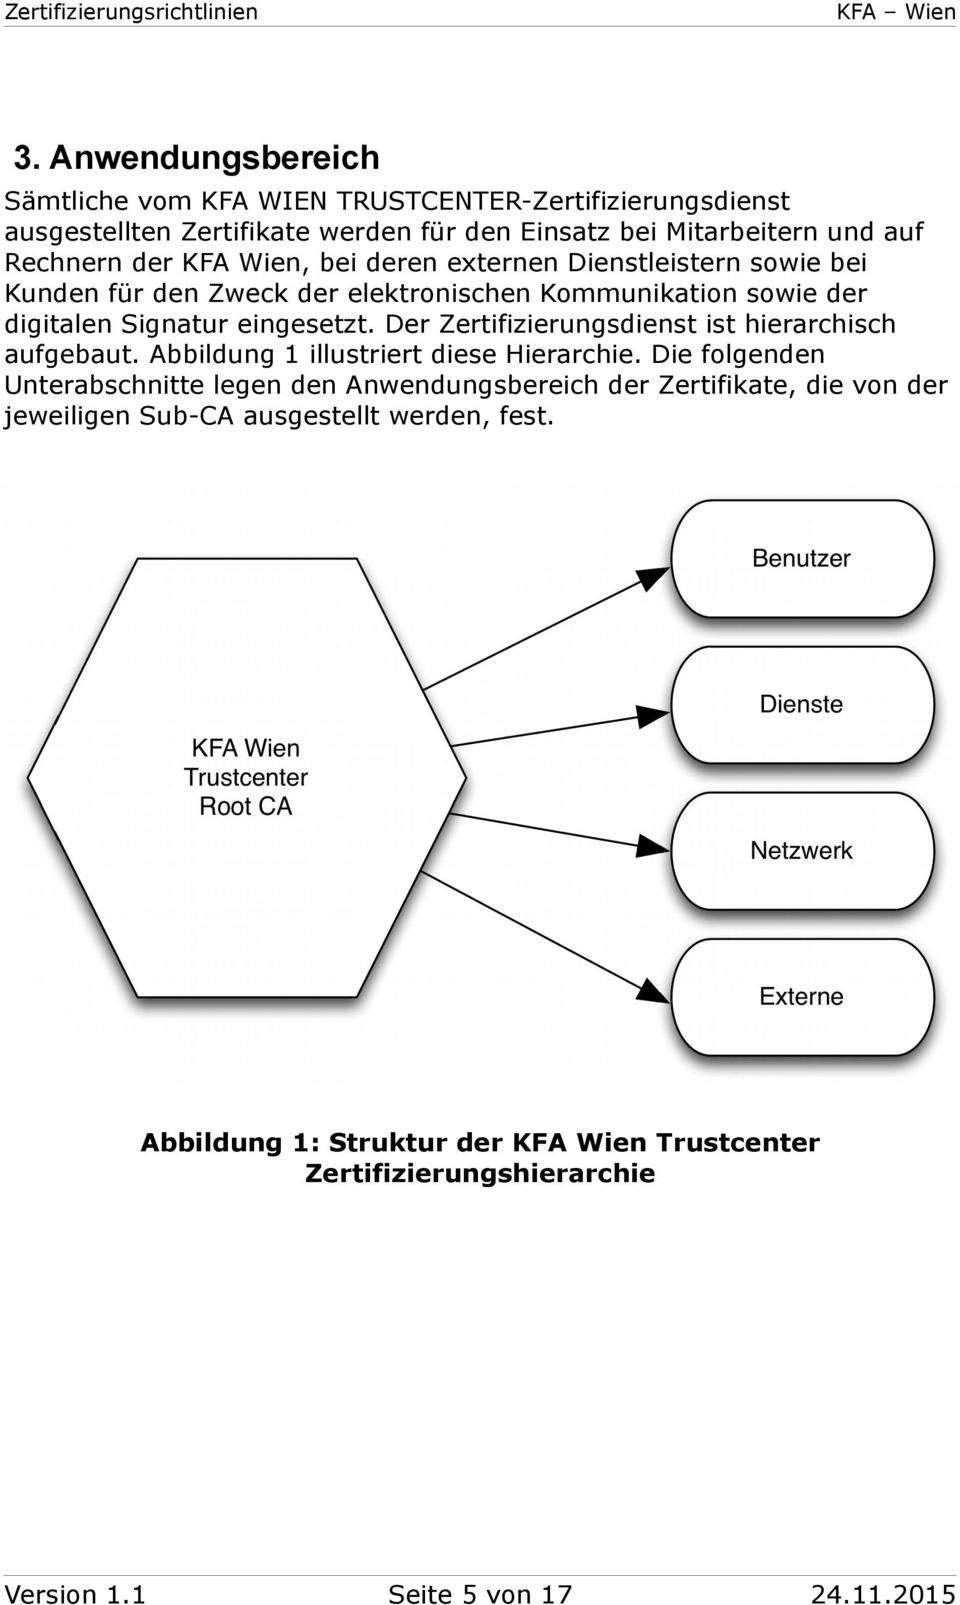 Der Zertifizierungsdienst ist hierarchisch aufgebaut. Abbildung 1 illustriert diese Hierarchie.